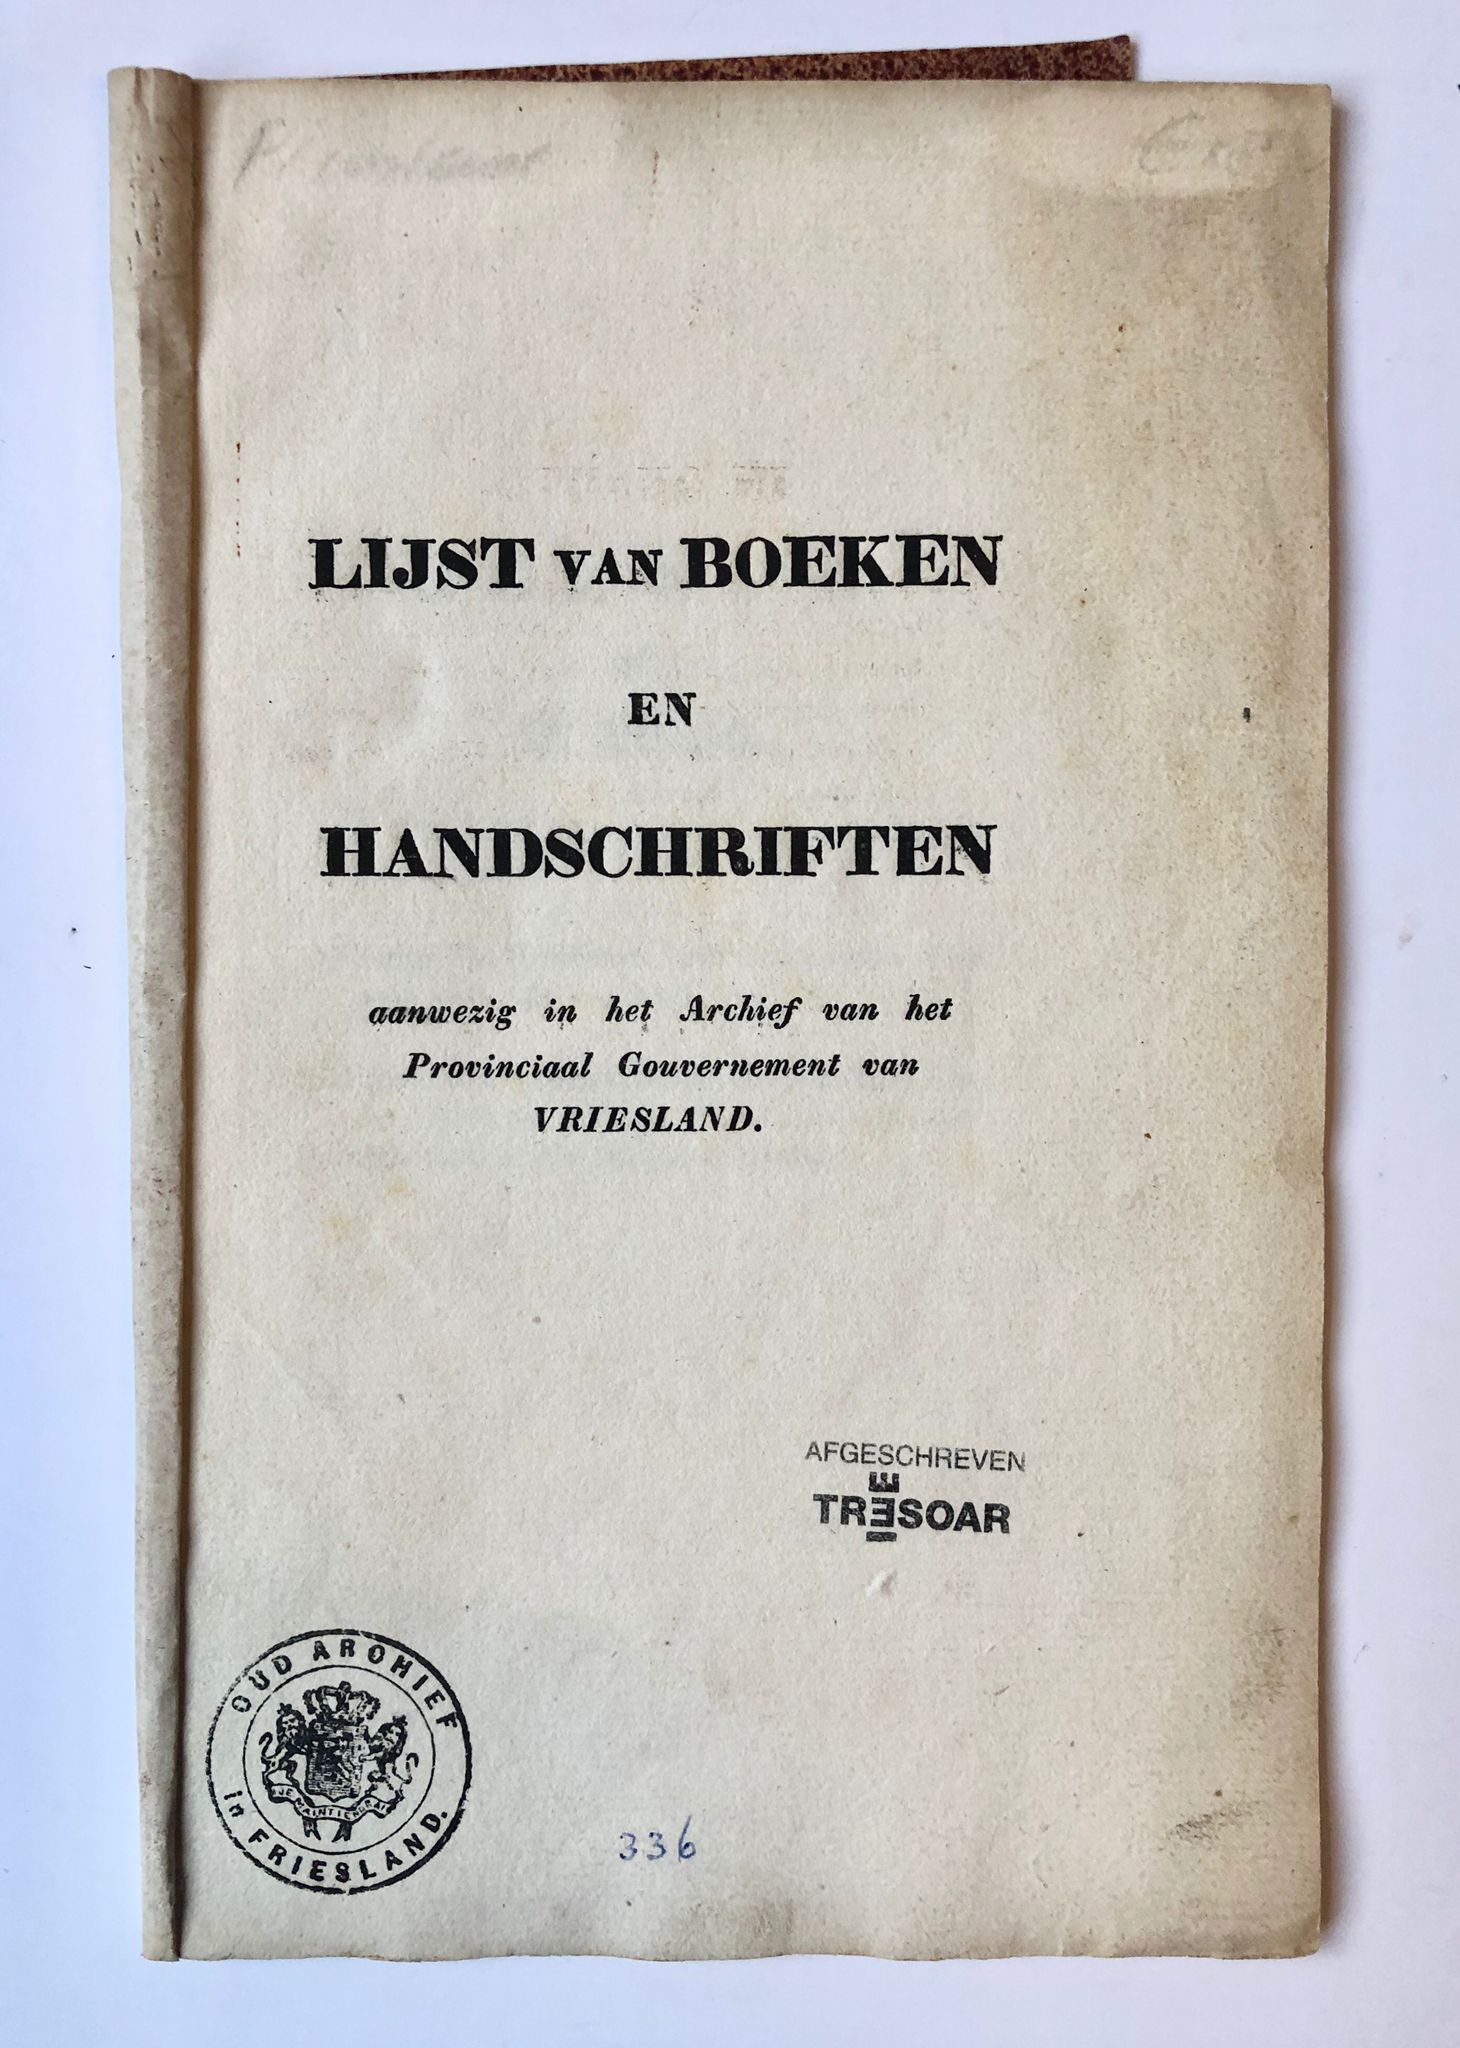 [Friesland, ca 1836] Lijst van boeken en handschriften aanwezig in het Archief van het Provinciaal Gouvernement van Vriesland, [Leeuwarden?, ca 1836], 15 pp.